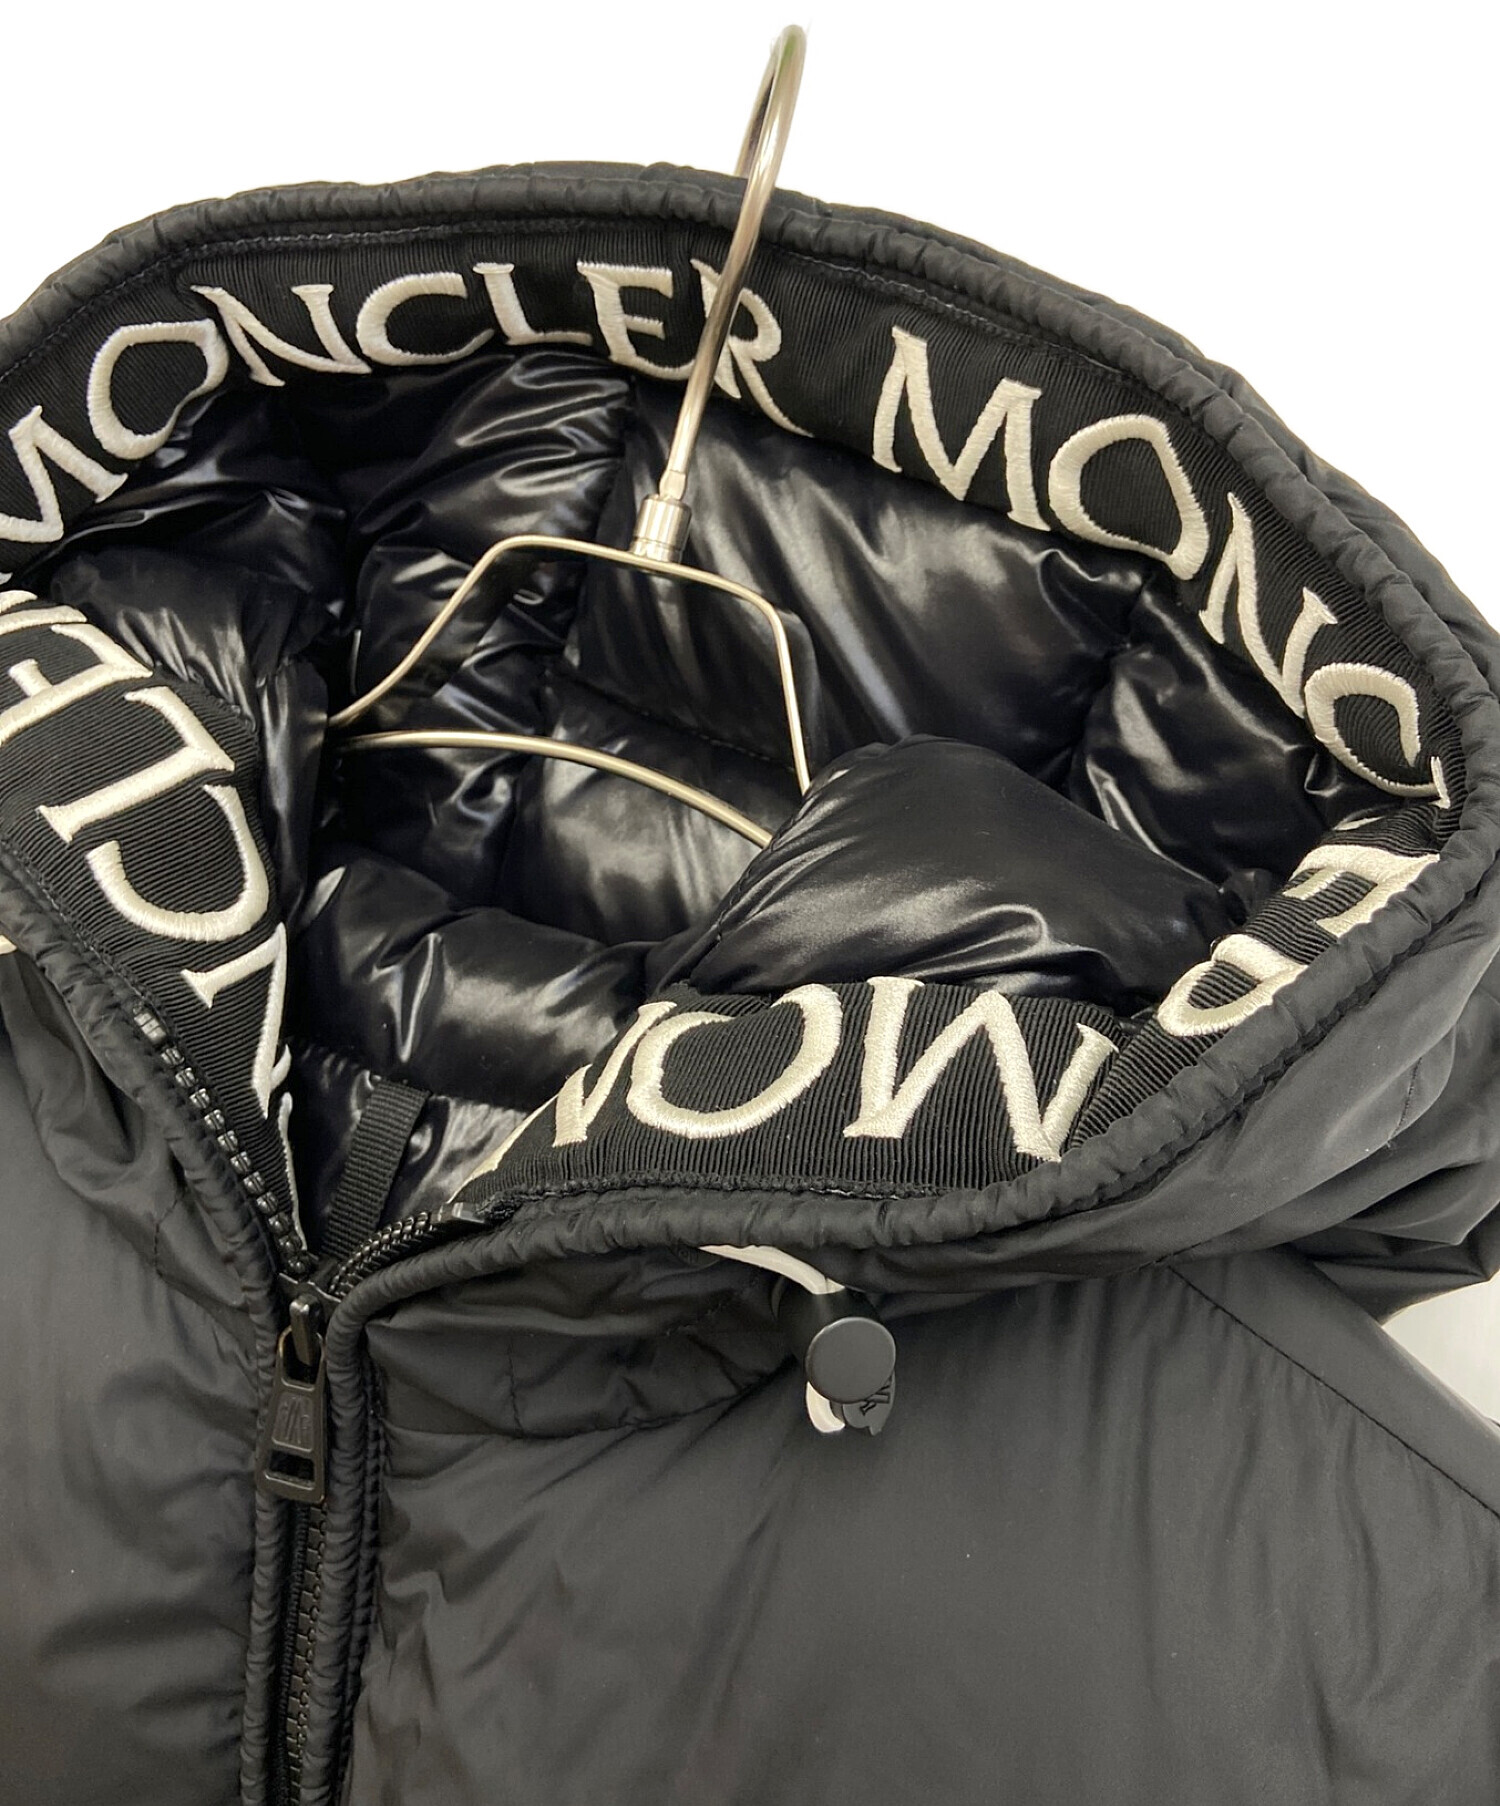 MONCLER (モンクレール) ダウンジャケット ブラック サイズ:1